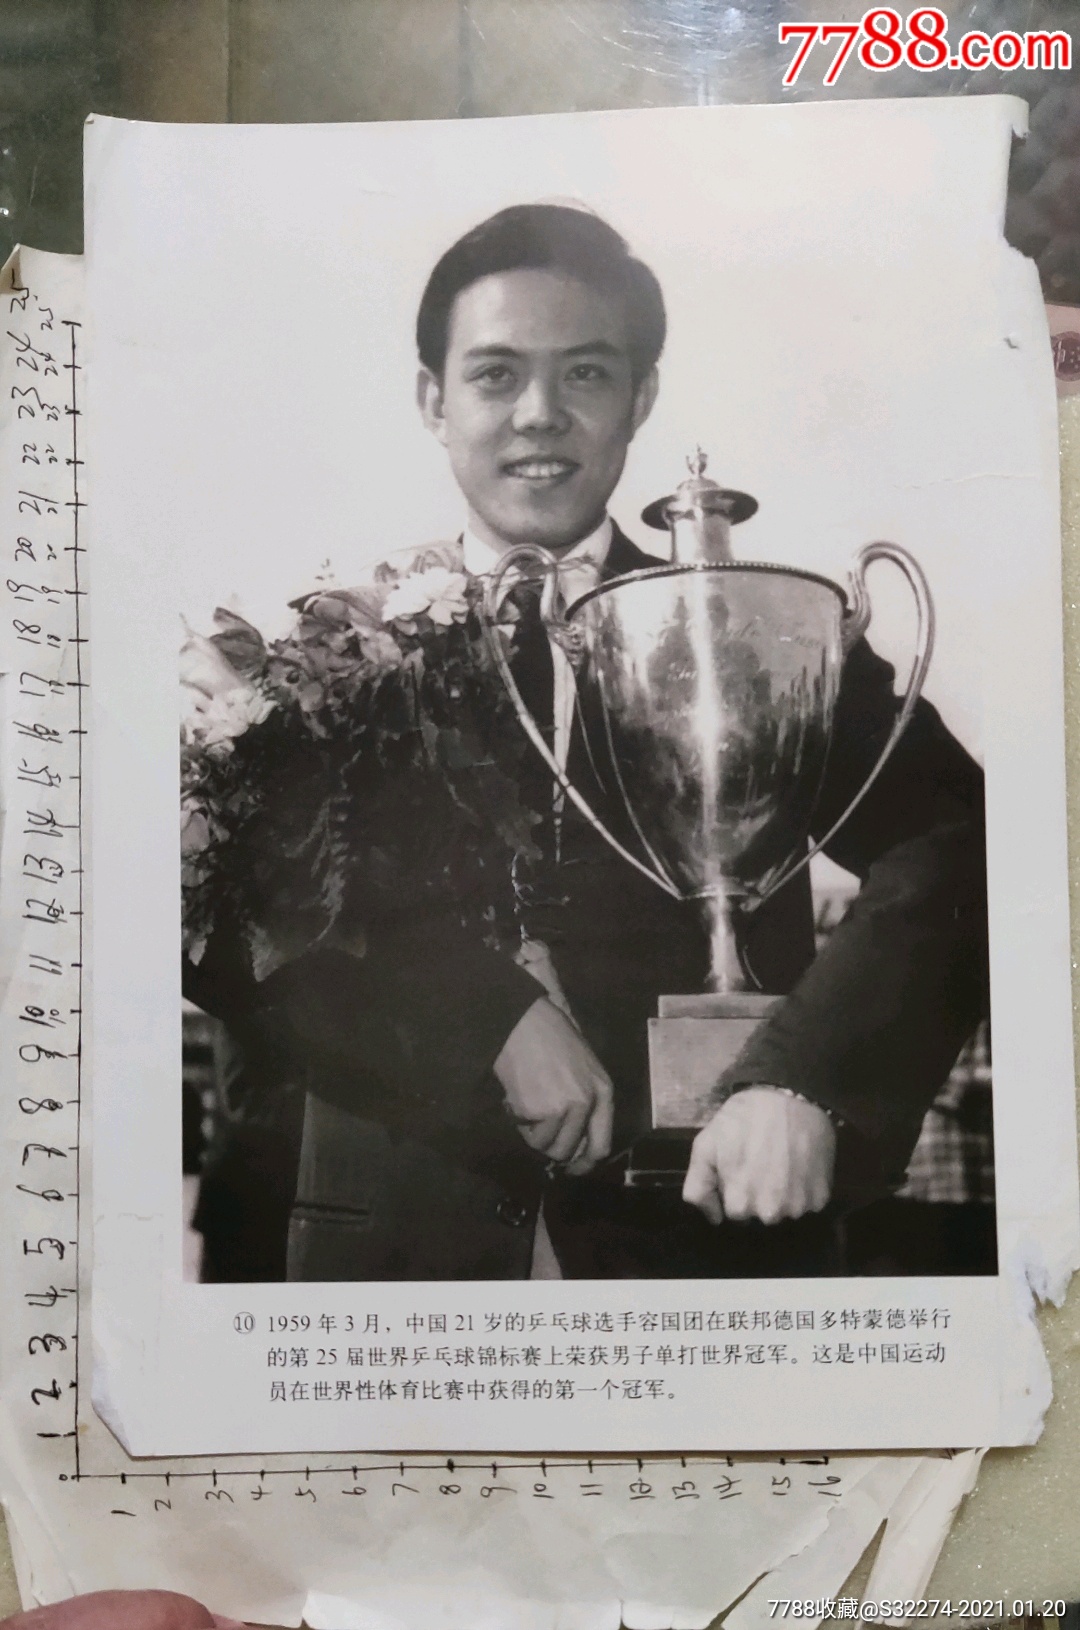 1959年3月中国运动员:容国团获得第一个世界性体育冠军